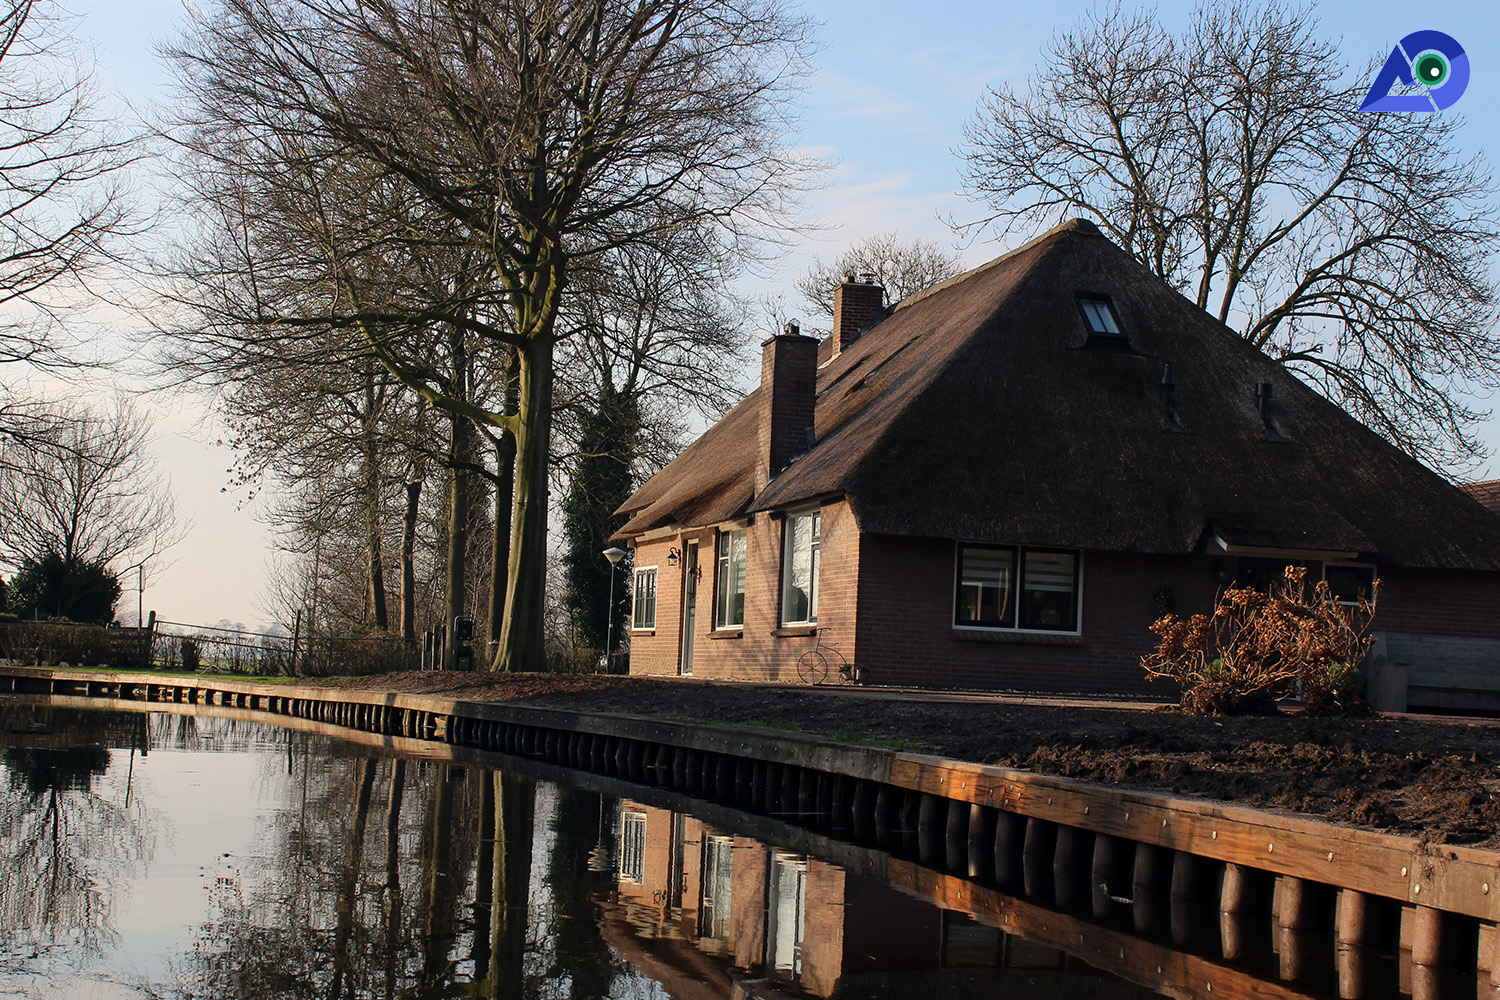 Giethoorn village